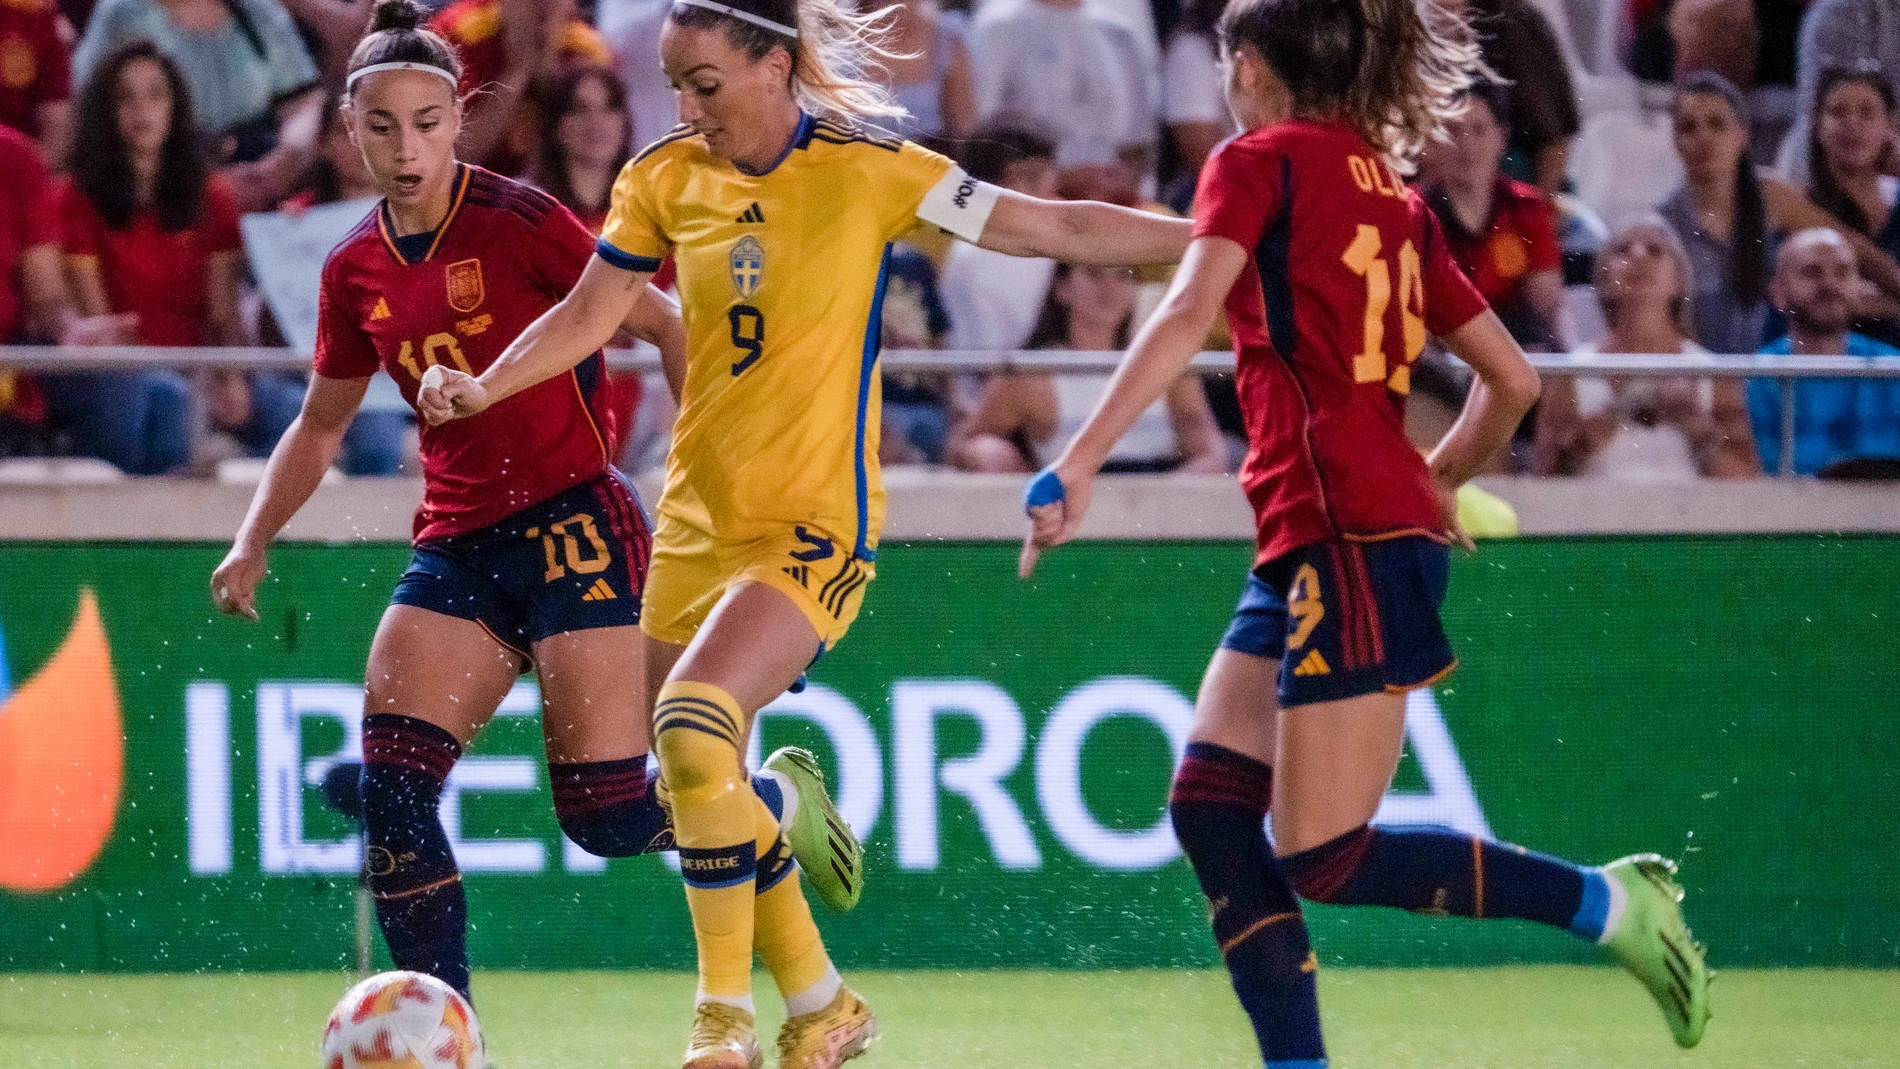 La delantera de la selección de Suecia, Kosovare Asllani conduce el balón ante las jugadoras de la selección española Athenea del Castillo y Olga Carmona